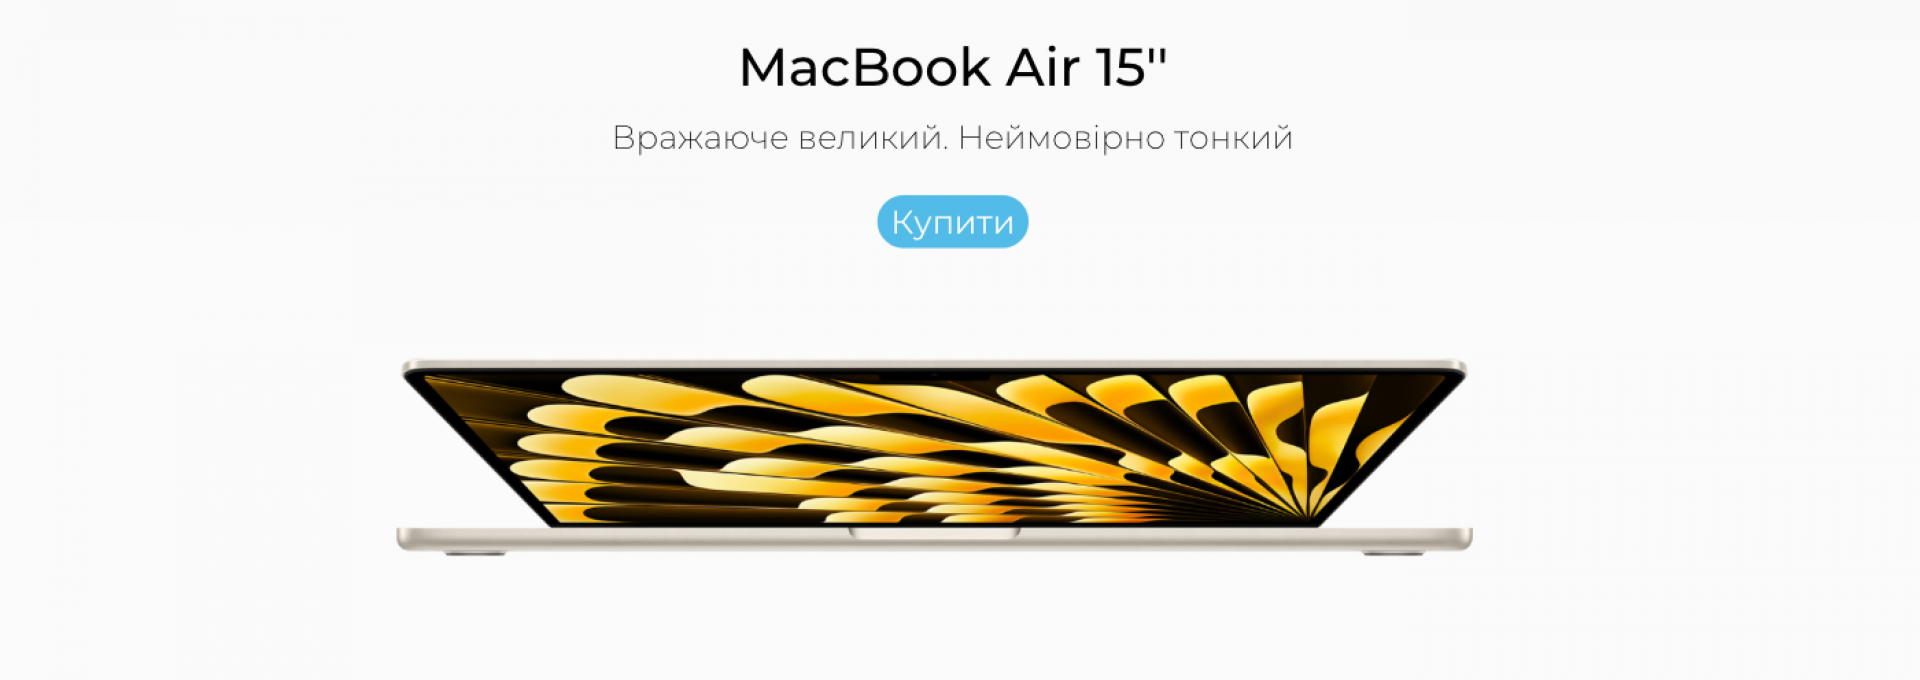 MacBook air 15